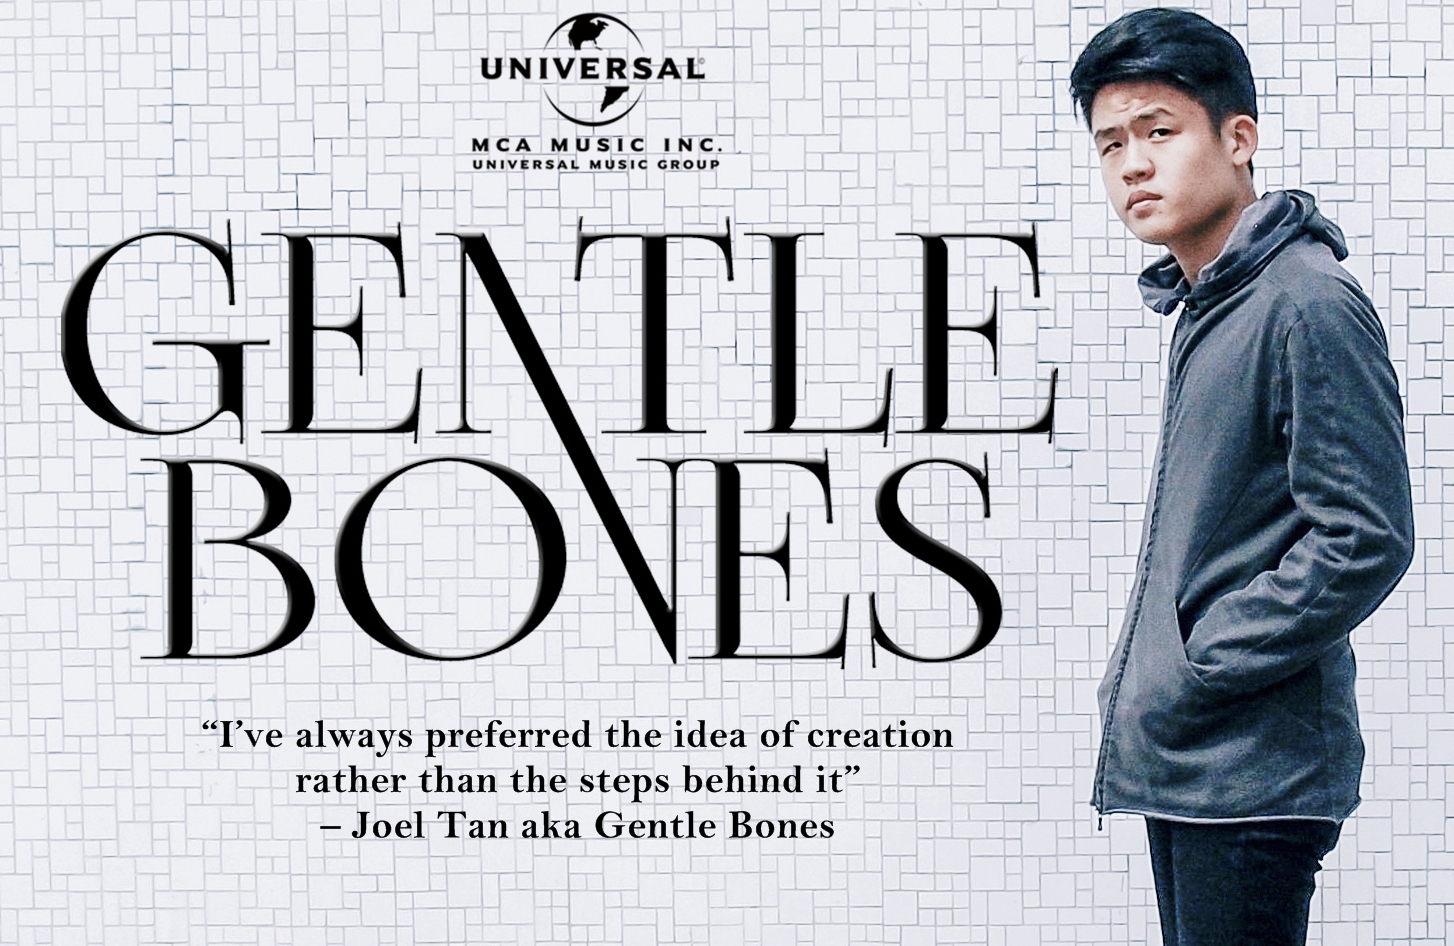 'Gentle Bones' Font?